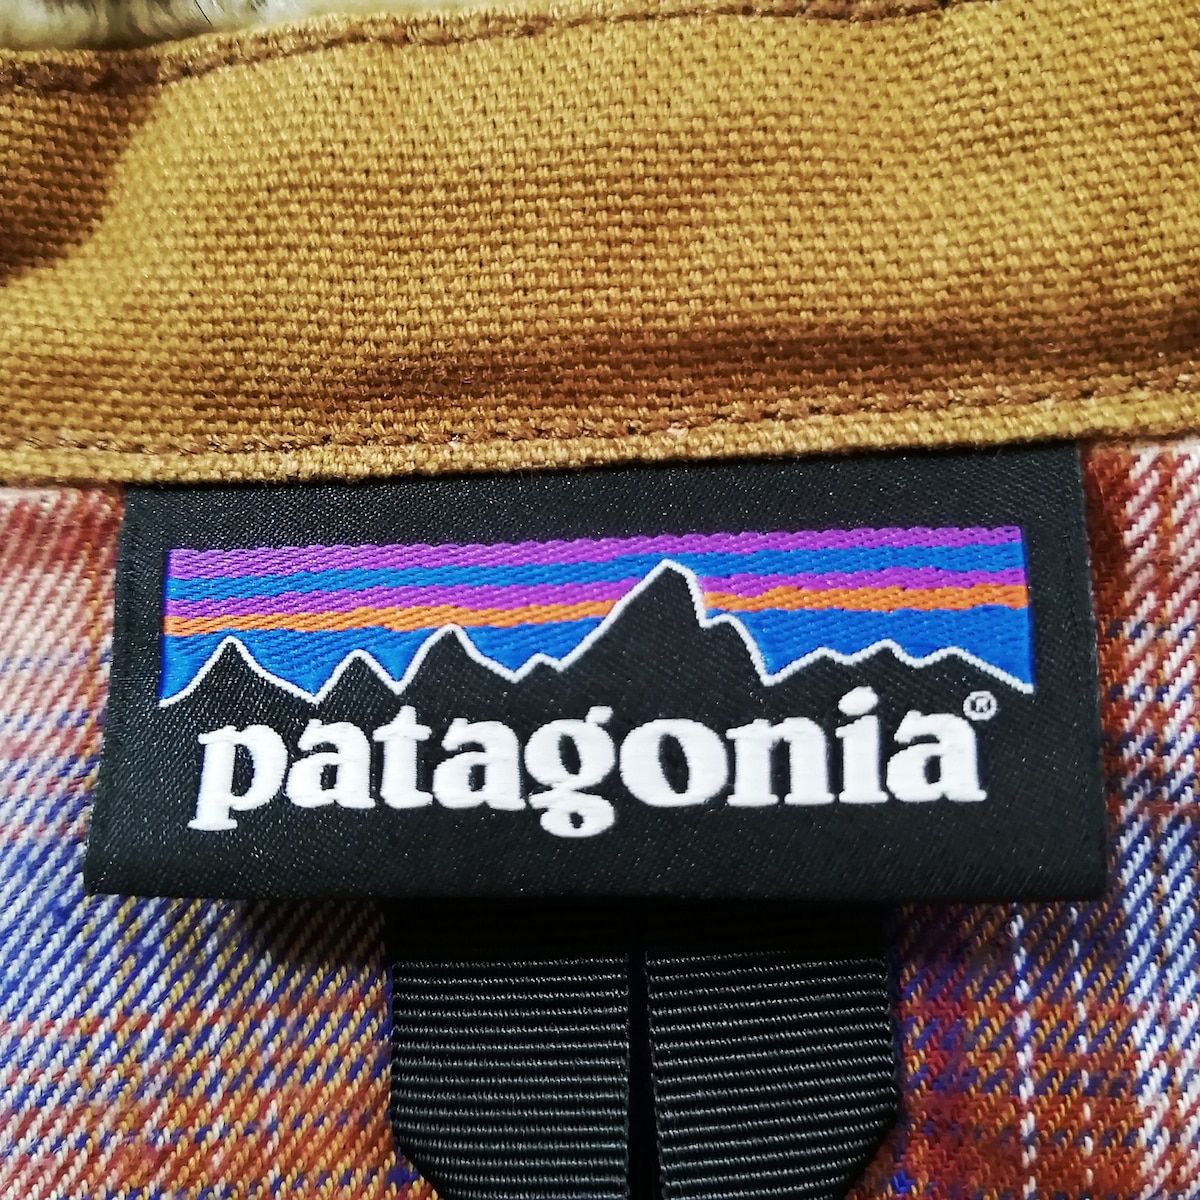 Patagonia(パタゴニア) ブルゾン サイズM レディース ブラウン×アイボリー 裏ボアフード/マウンテンパーカー/ダック地/春・秋物